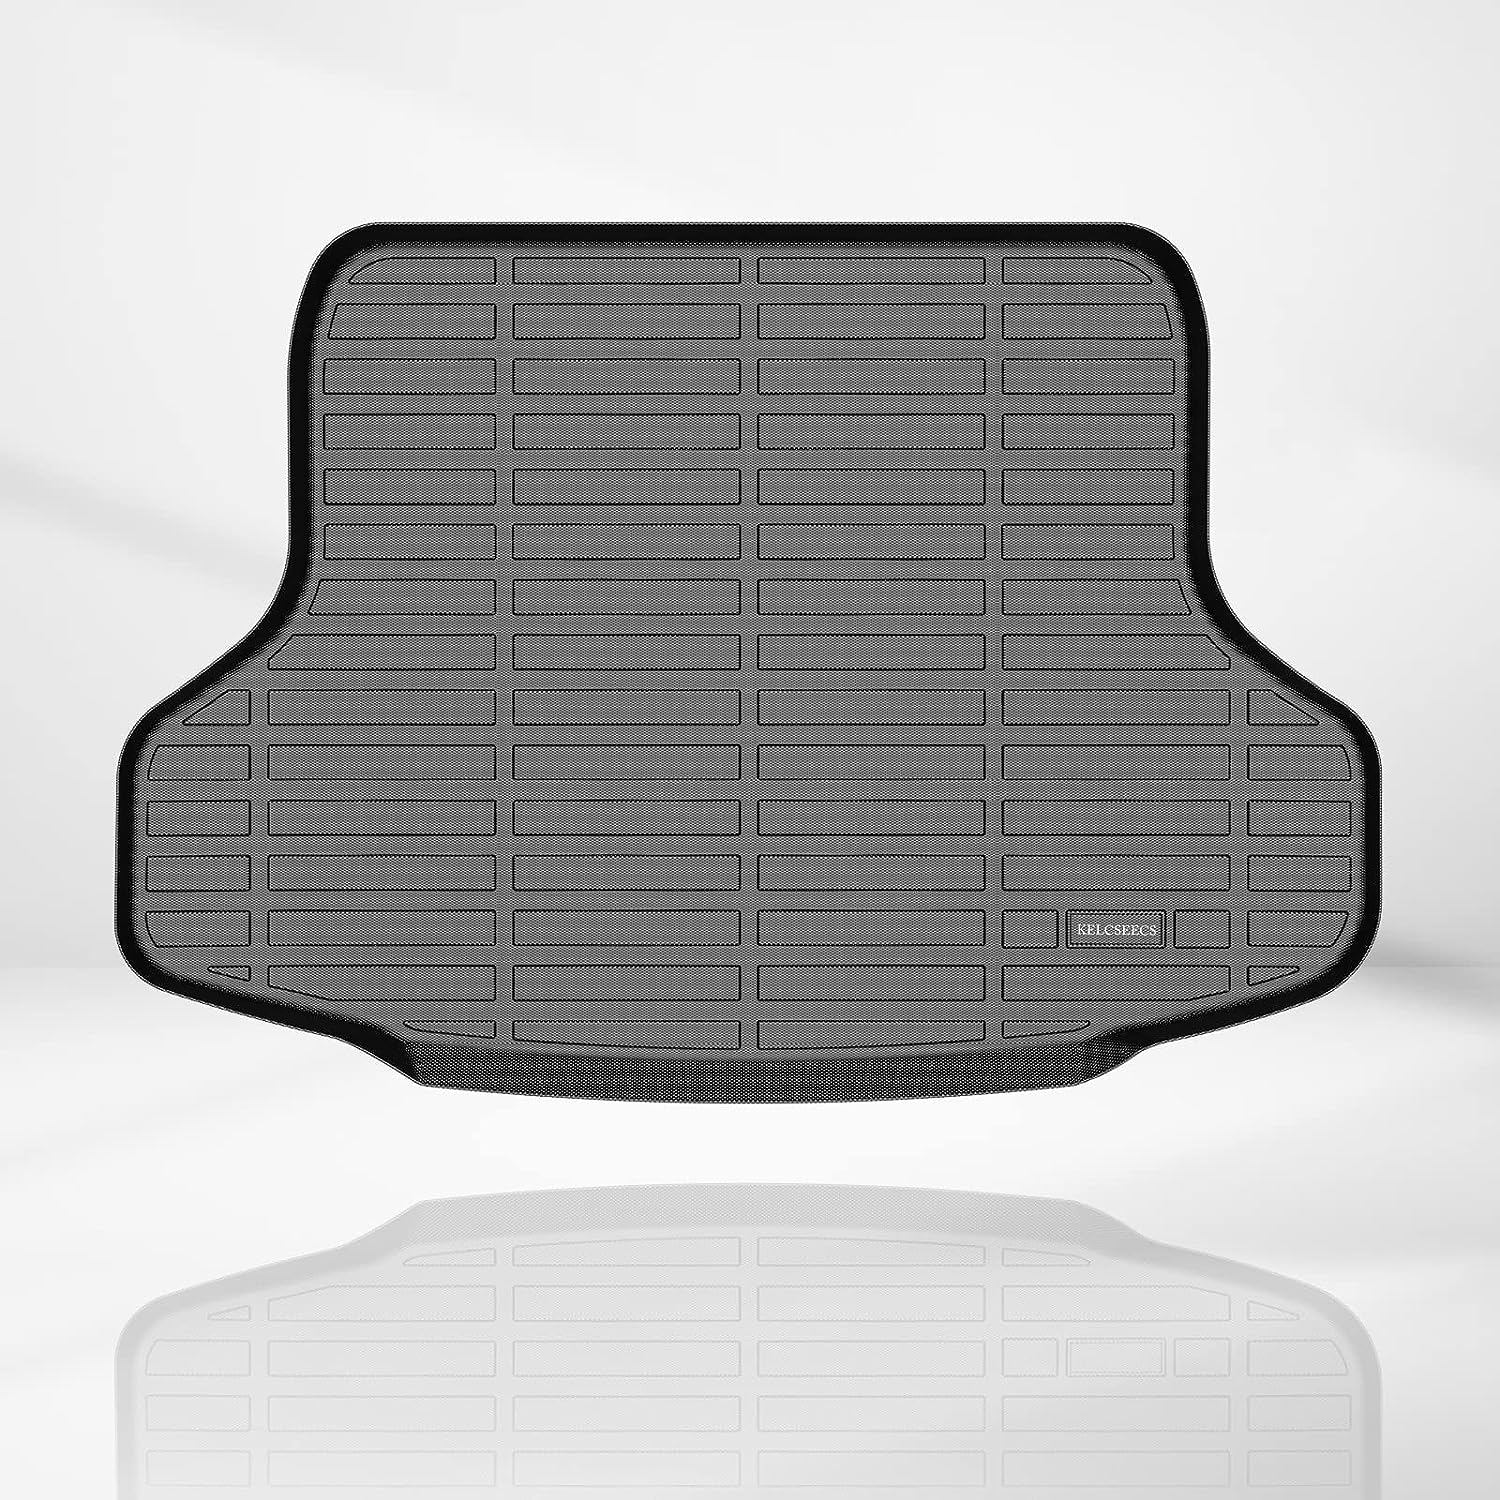 Kelcseecs All Weather 3D Tech Design TPE Car Trunk Mat Cargo Liner For Nissan Sentra 2020-2022